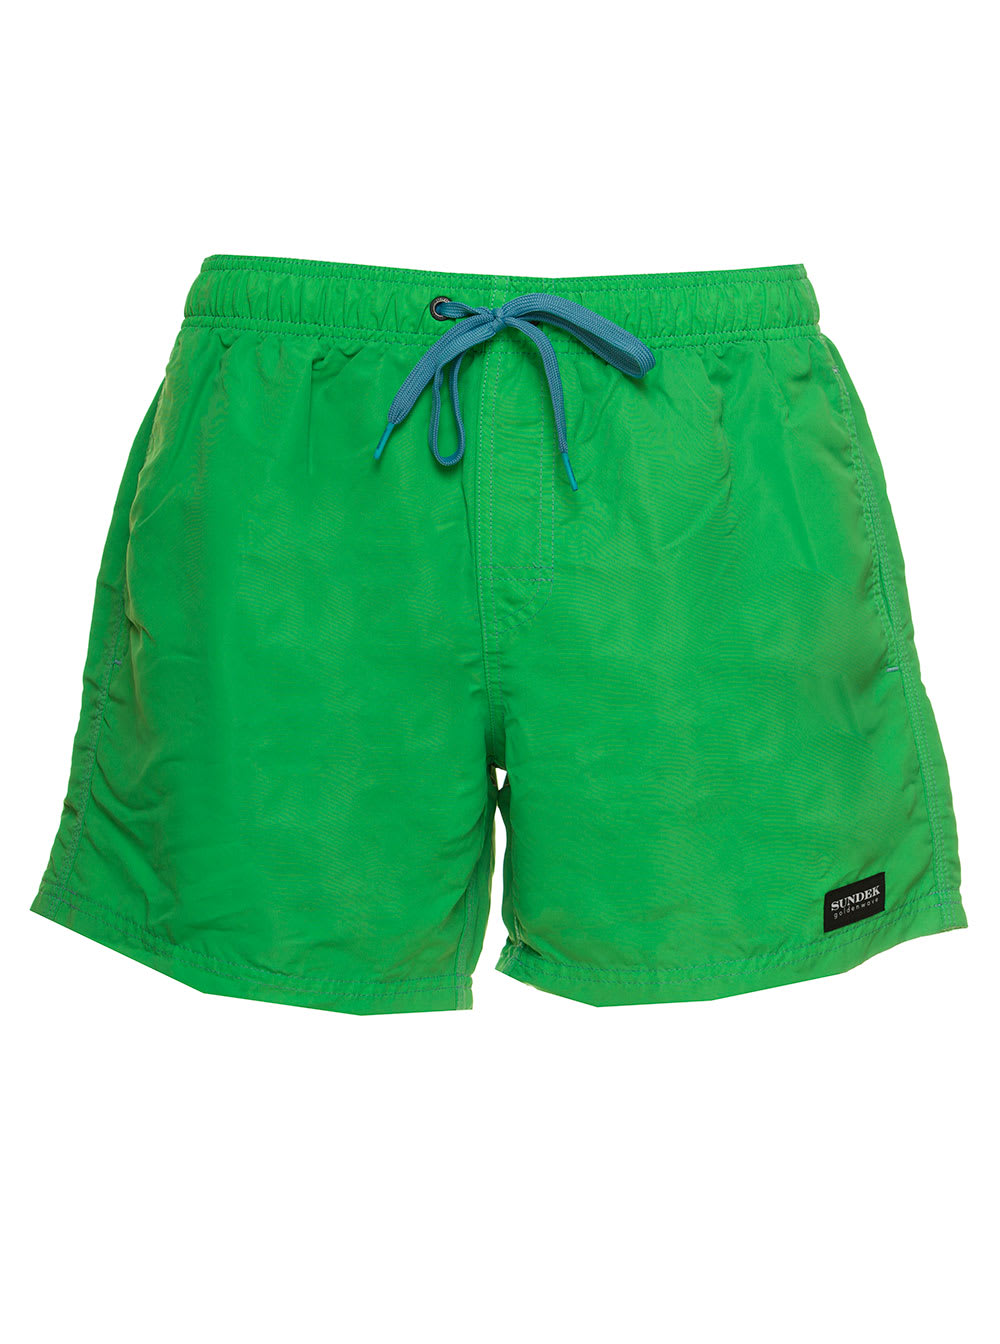 Sundek Mens Green Nylon Beach Shorts